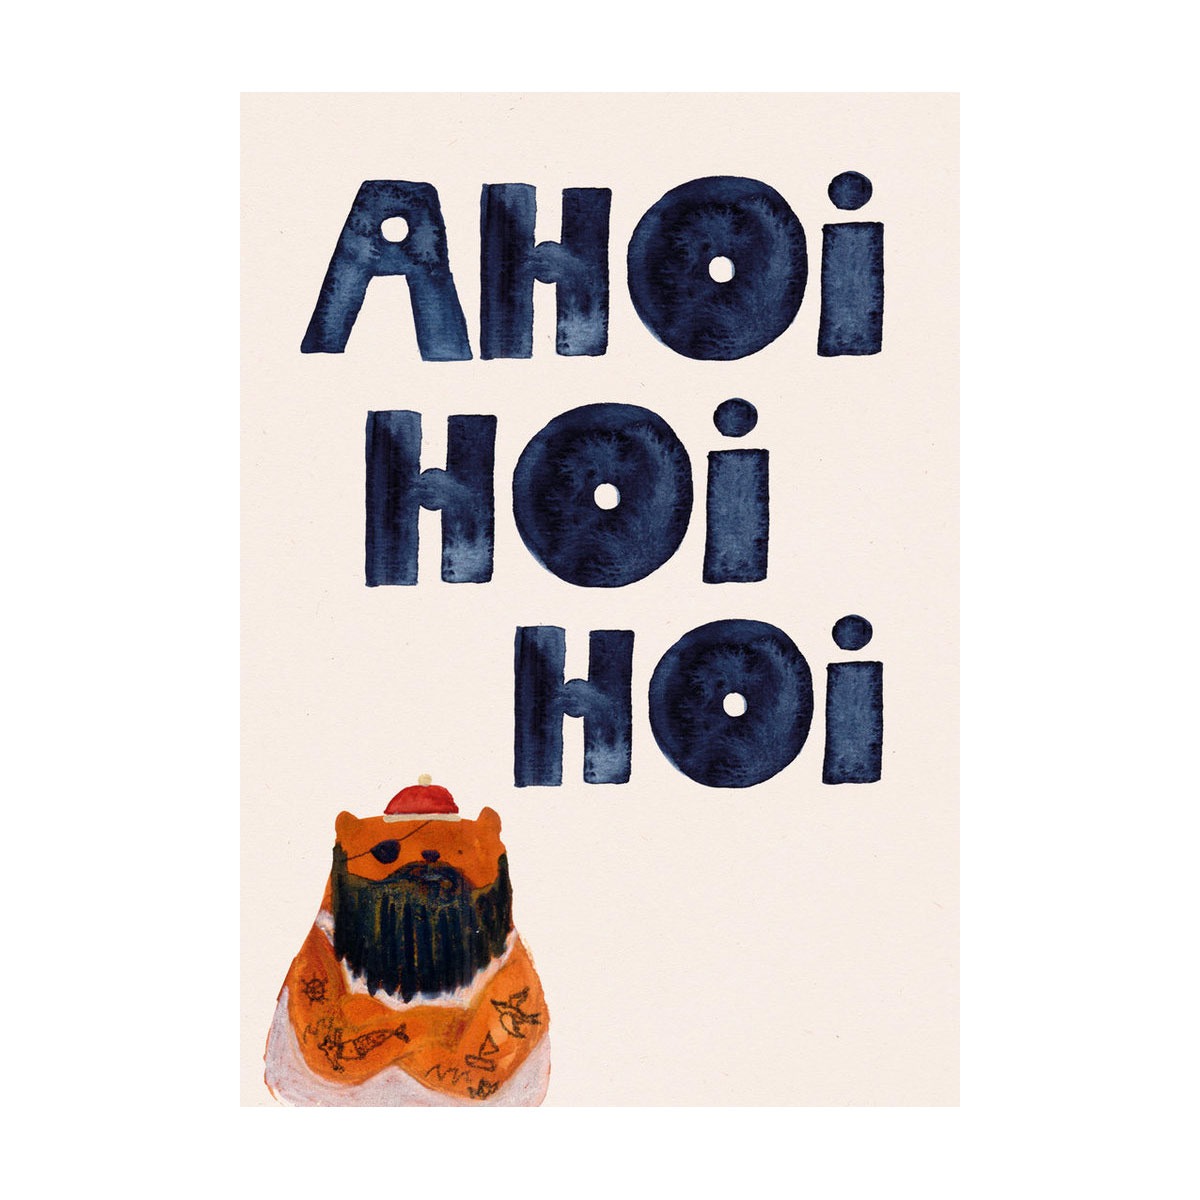 Postkarte mit der Aufschrift Ahoi Hoi Hoi und einem Teddibären in tättowierter Seemannmanier.